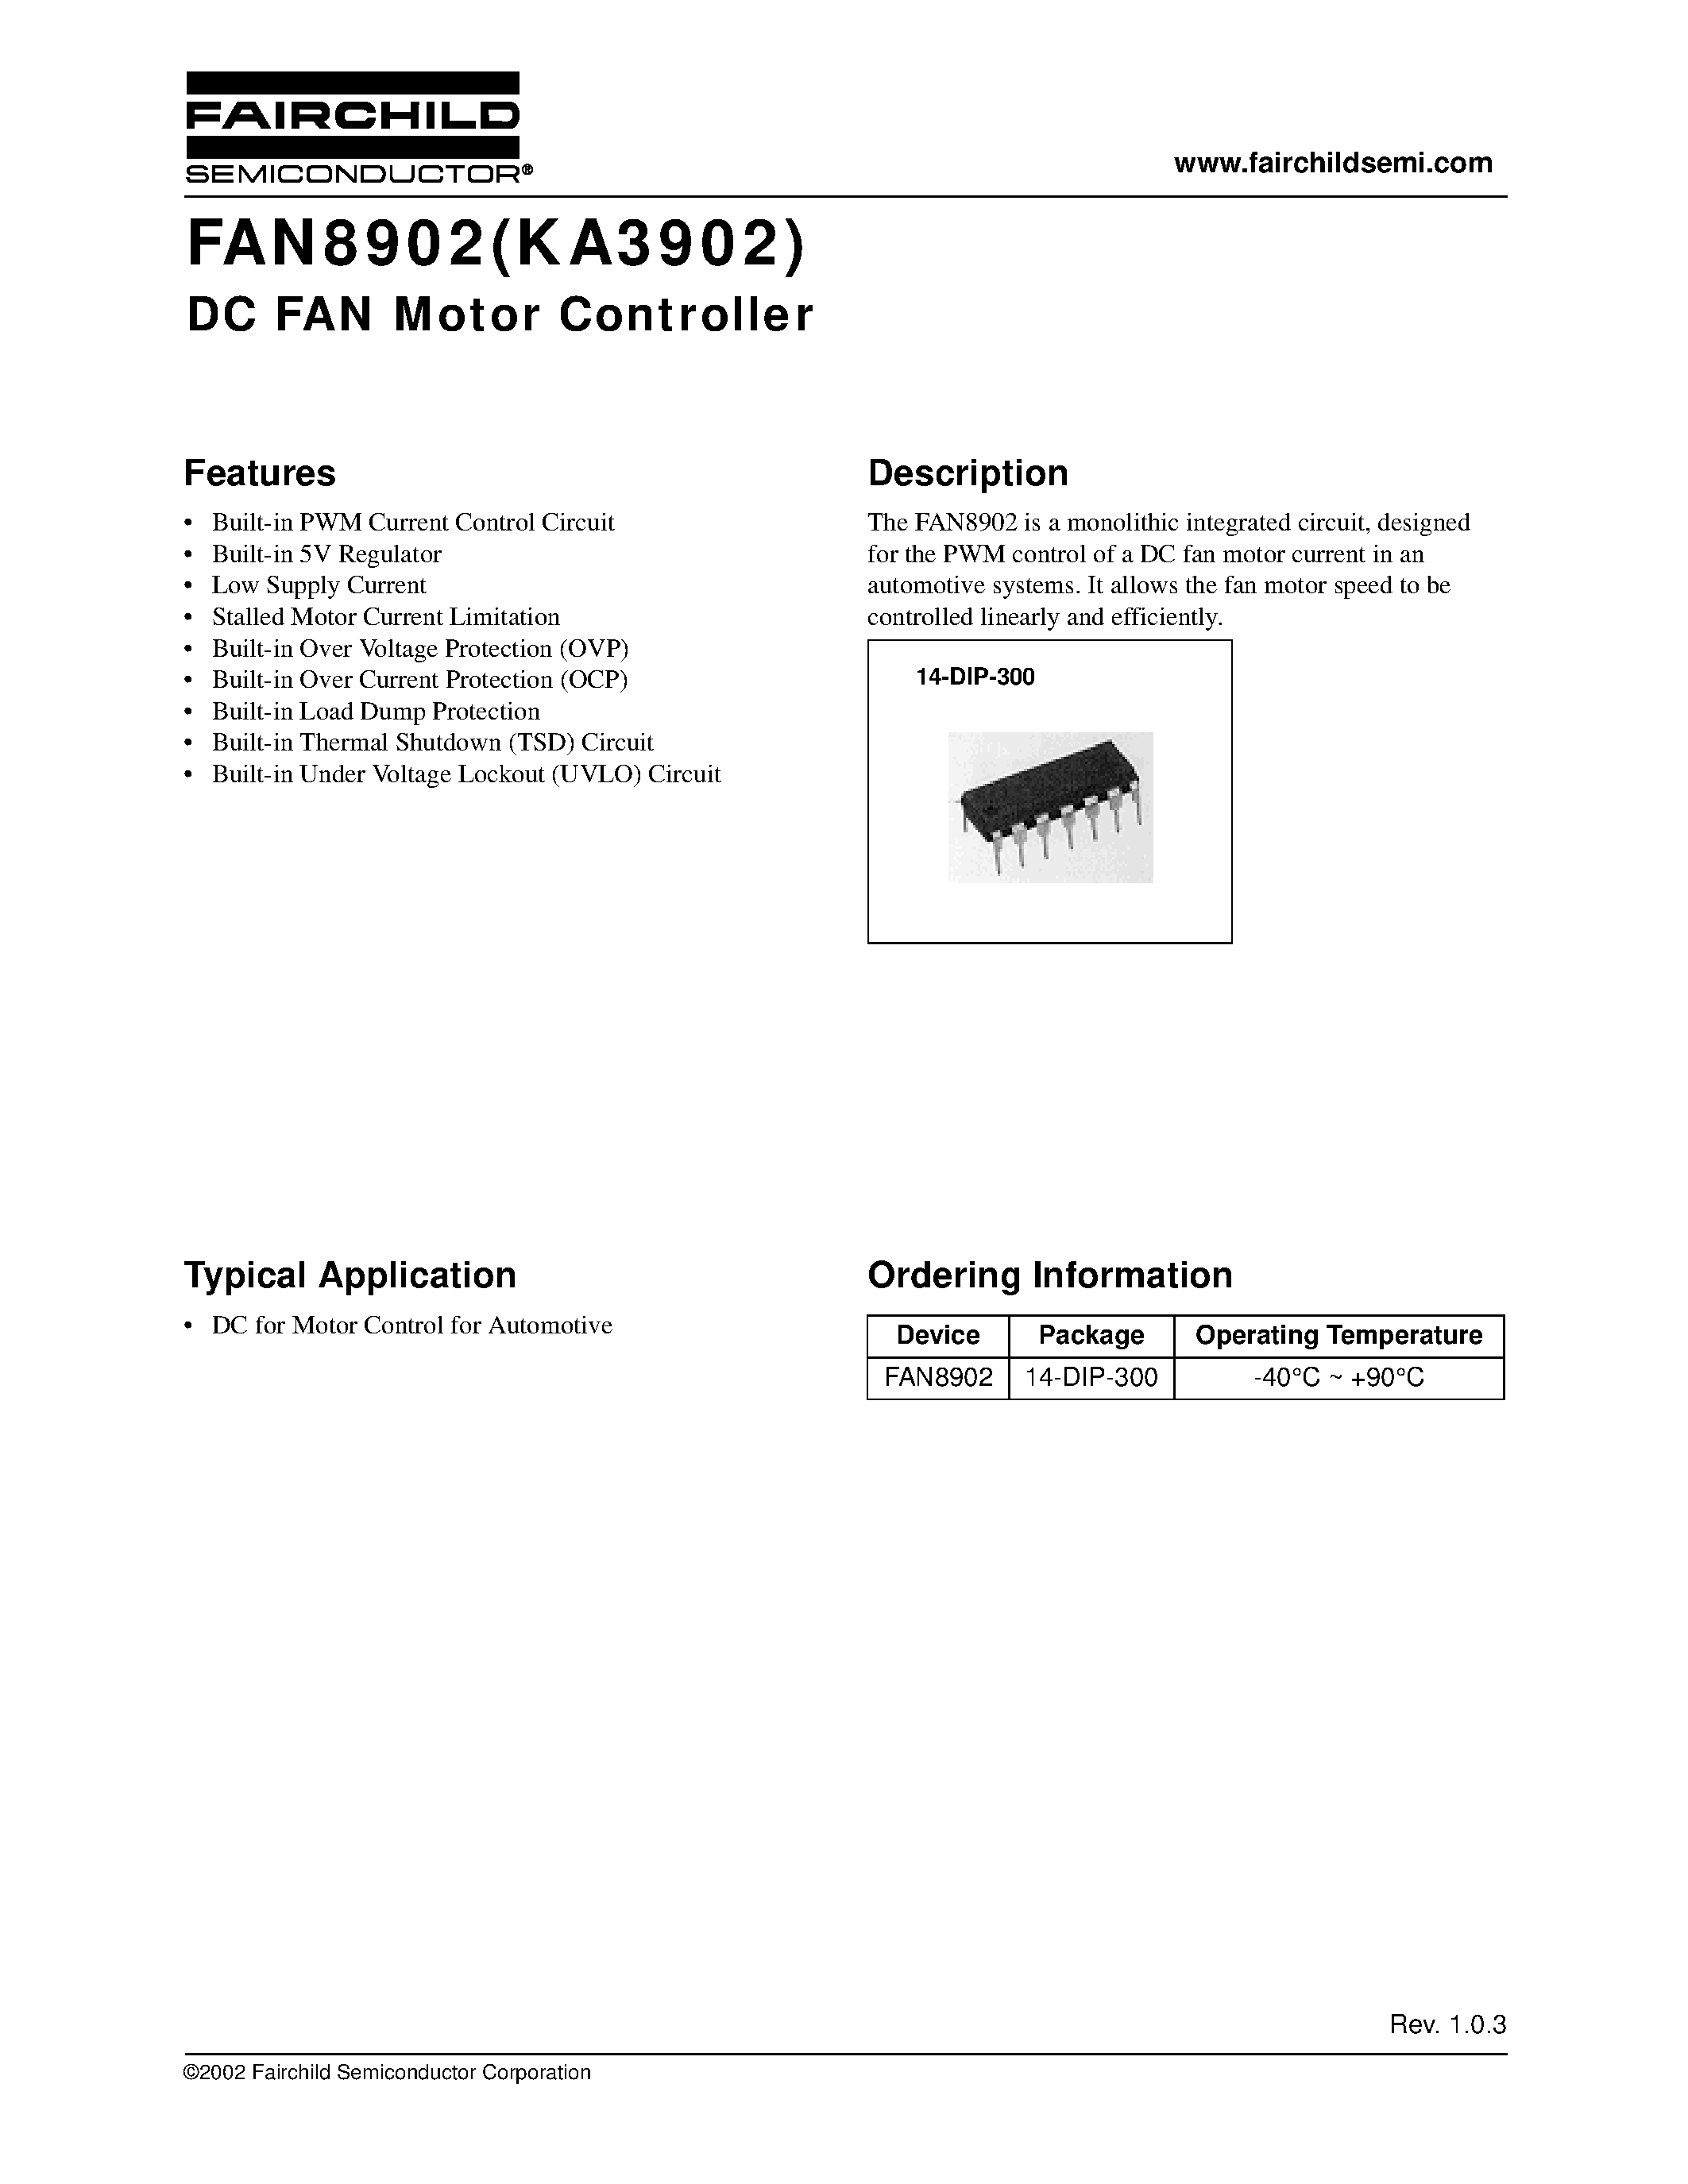 Datasheet FAN8902 - DC FAN Motor Controller page 1